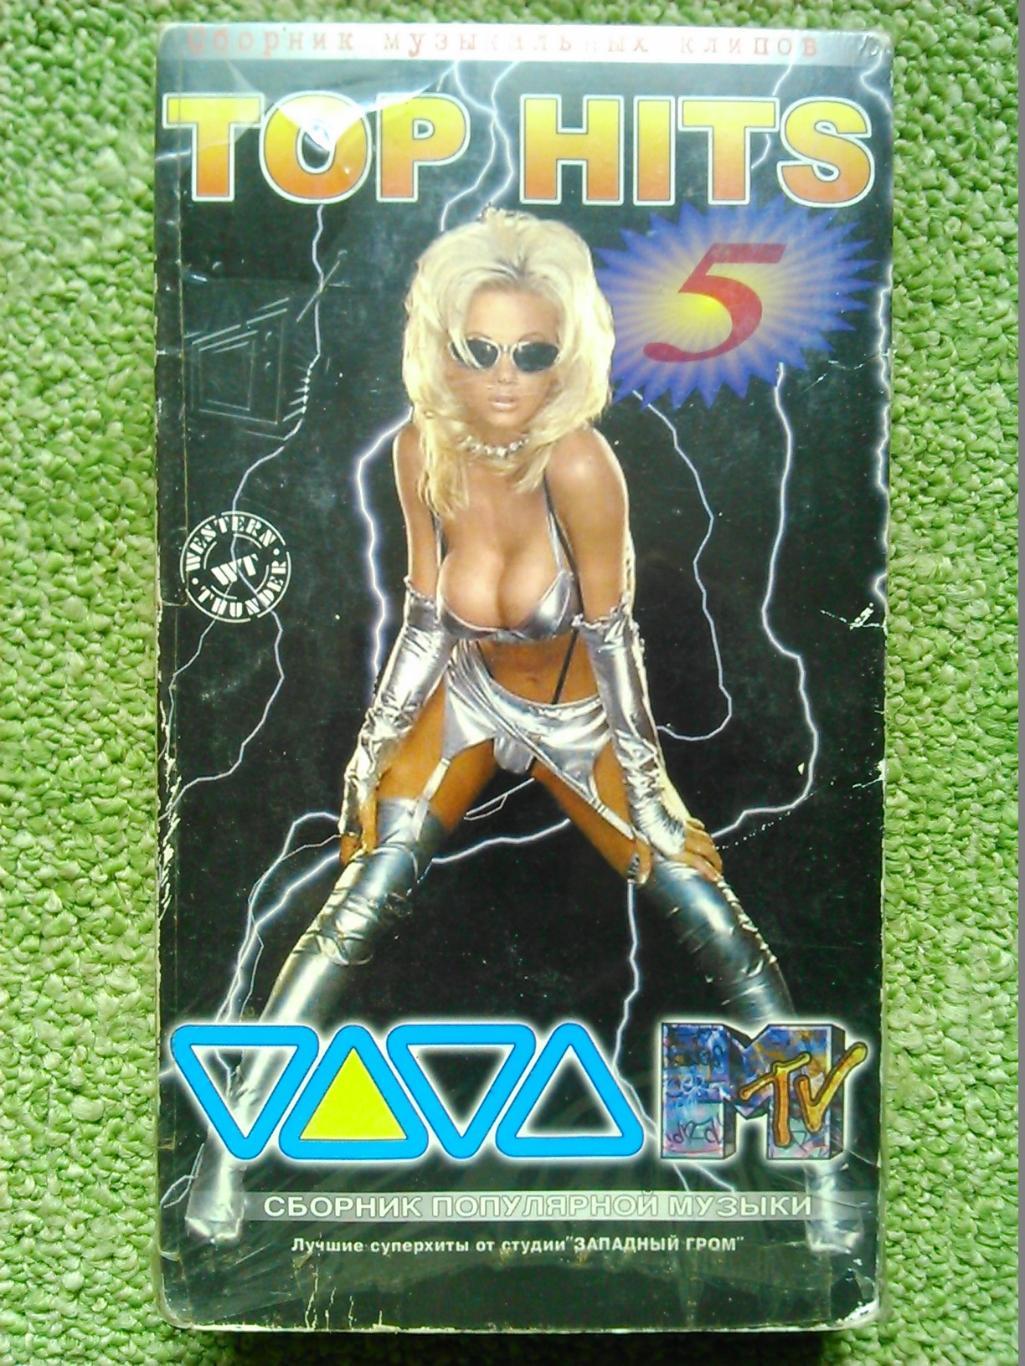 видеокассета. VHS- TOP HITS 5/Cб популярной зарубежной музыки 1999. Оптом скидки